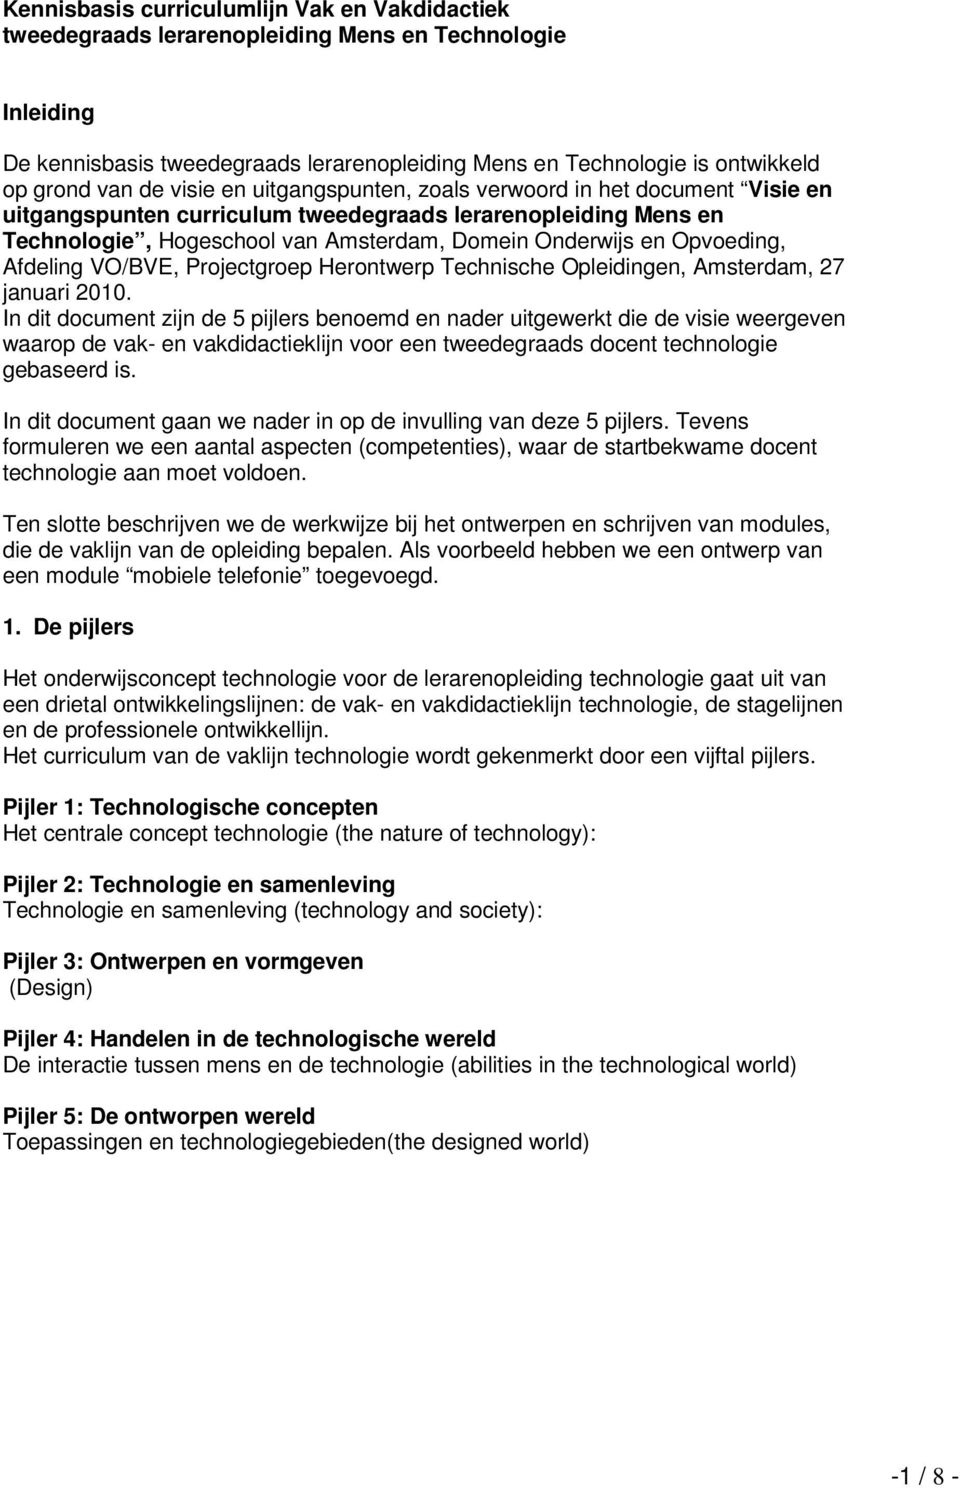 Opvoeding, Afdeling VO/BVE, Projectgroep Herontwerp Technische Opleidingen, Amsterdam, 27 januari 2010.